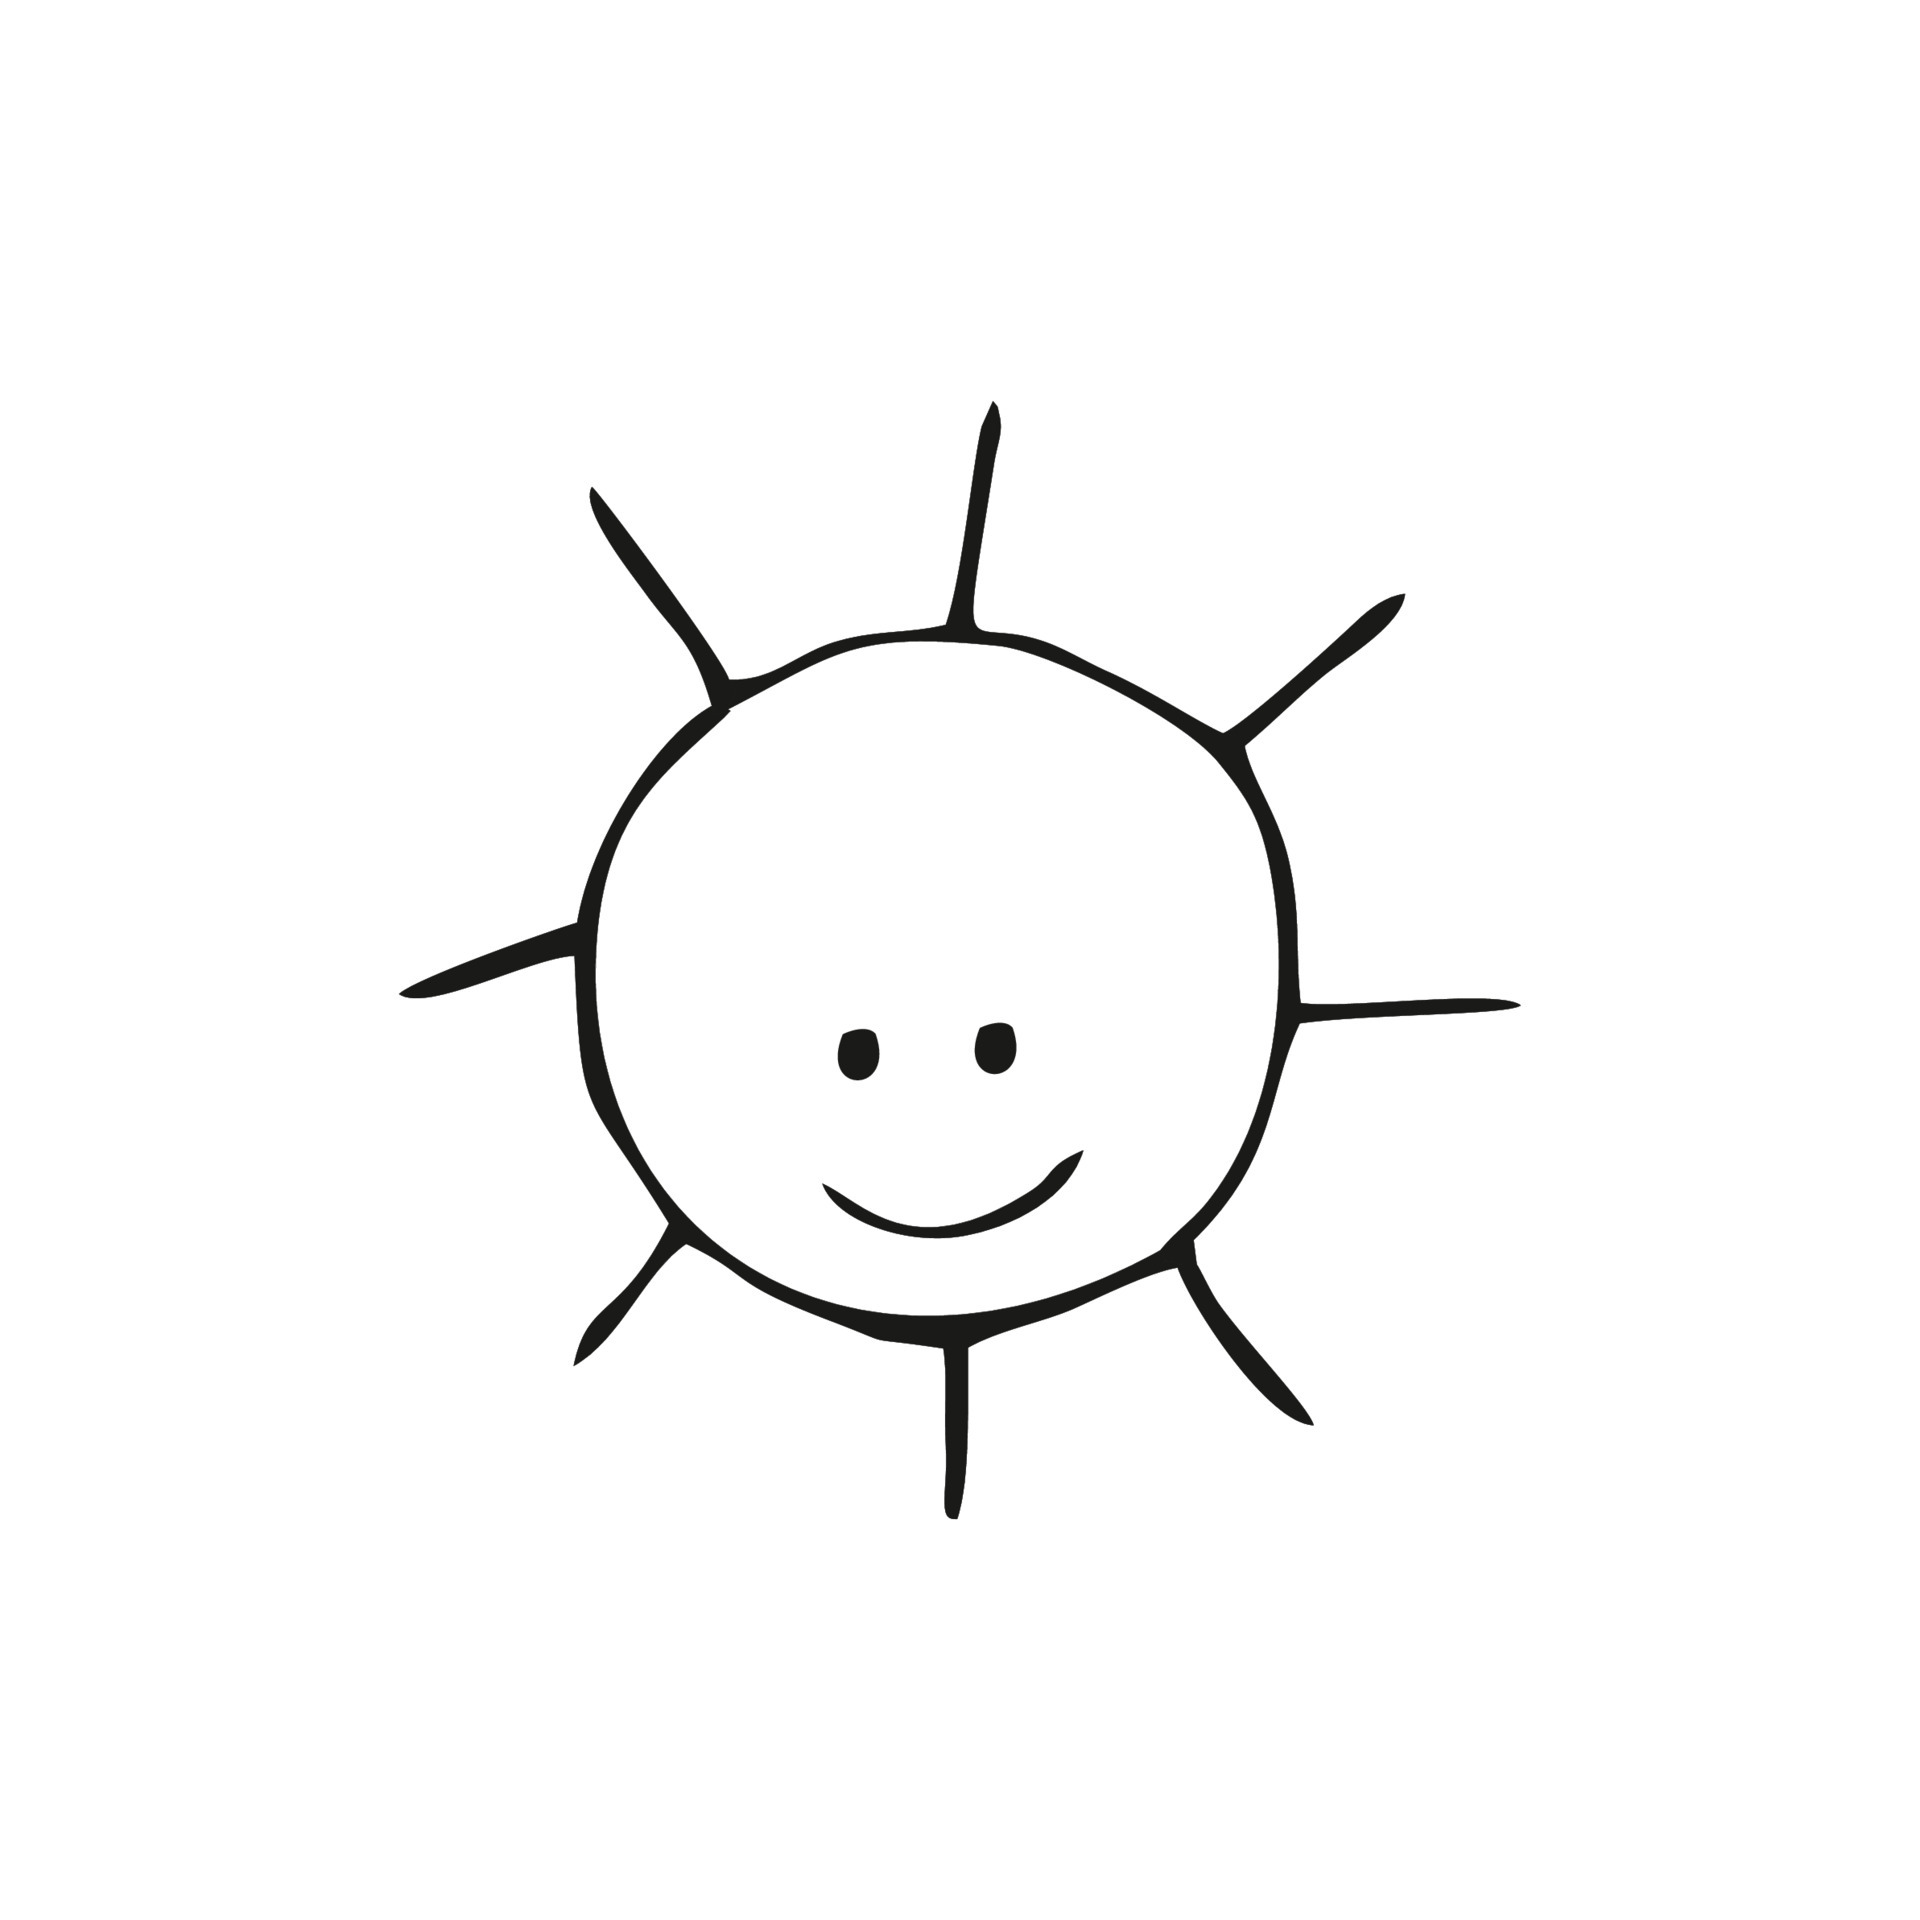 Bocetos Negros Acuarelas Metalizadas – La Sonrisa del Sol